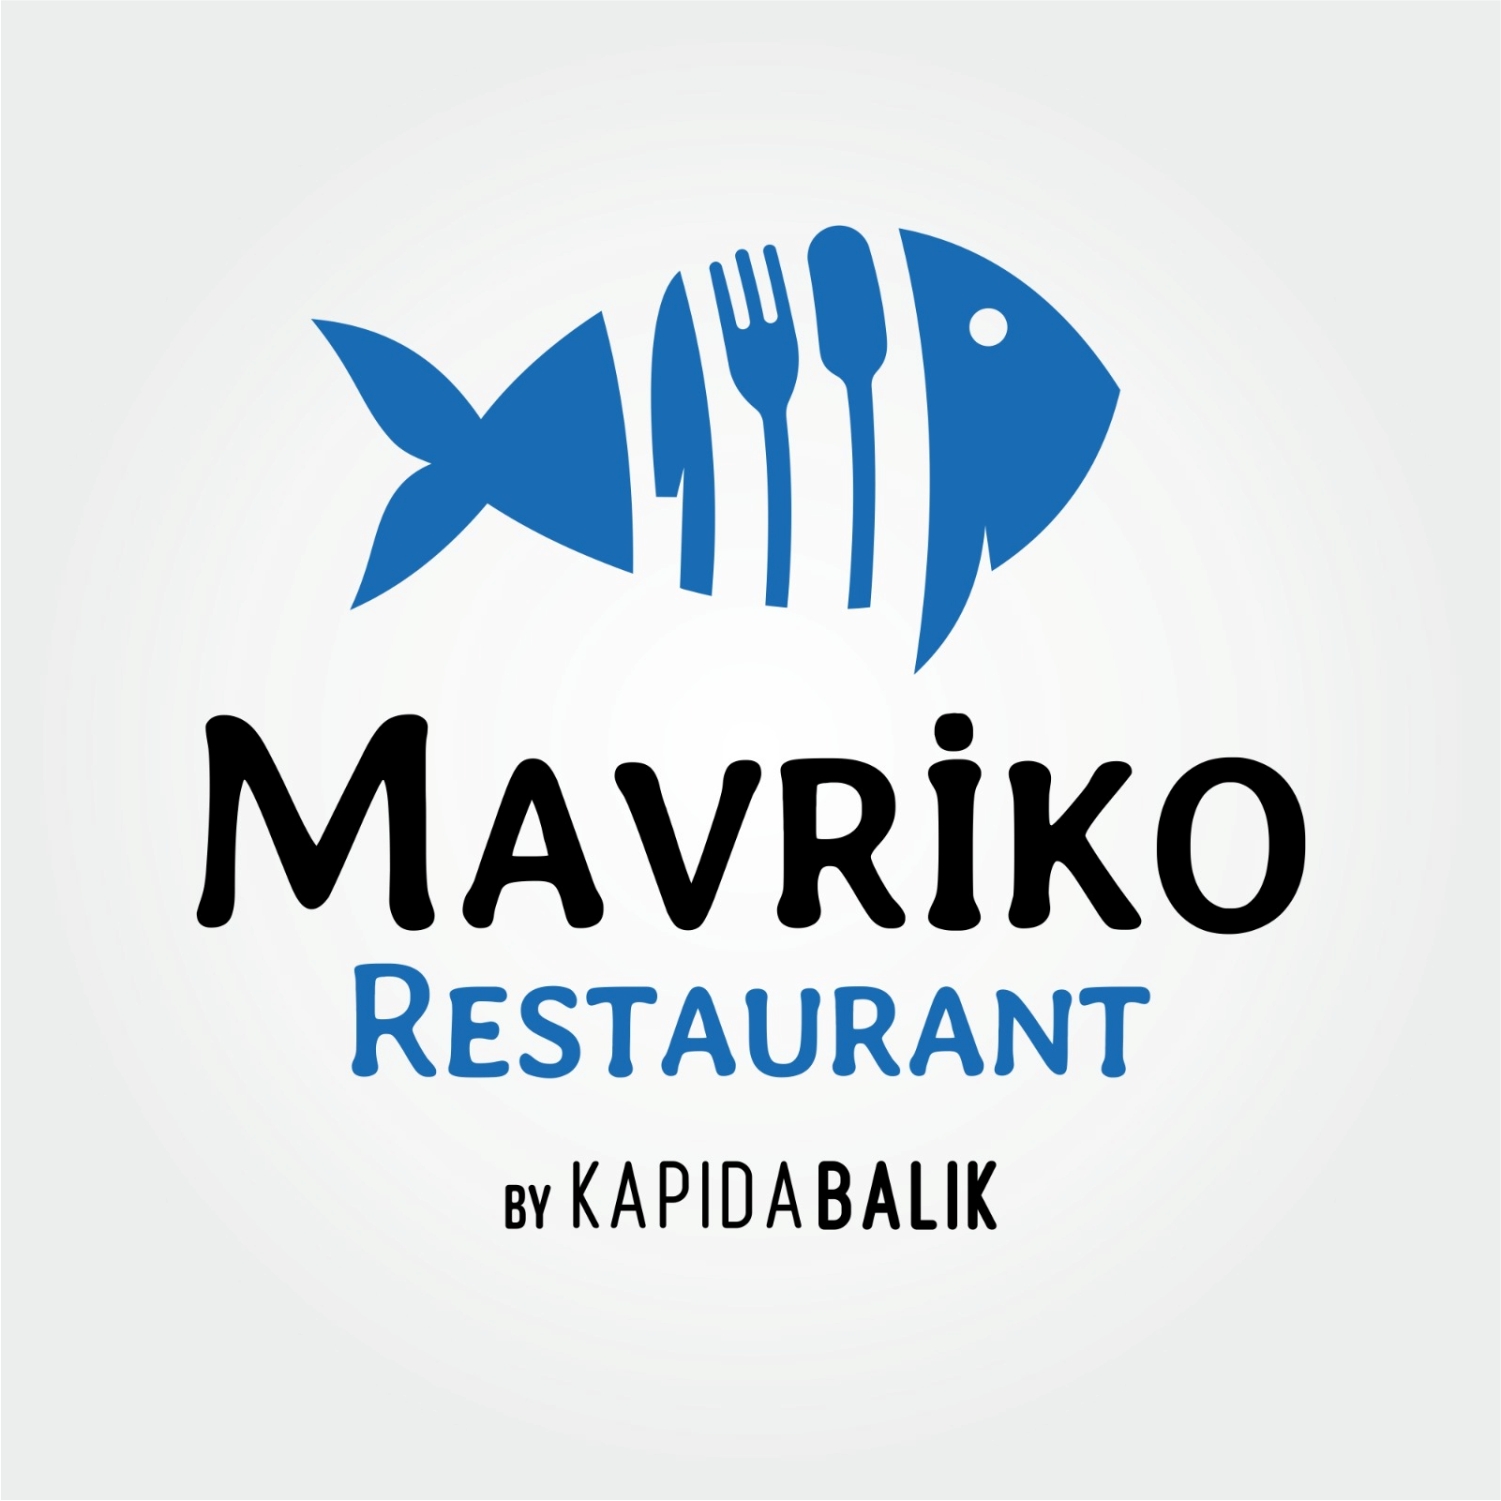 Mavriko Restaurant